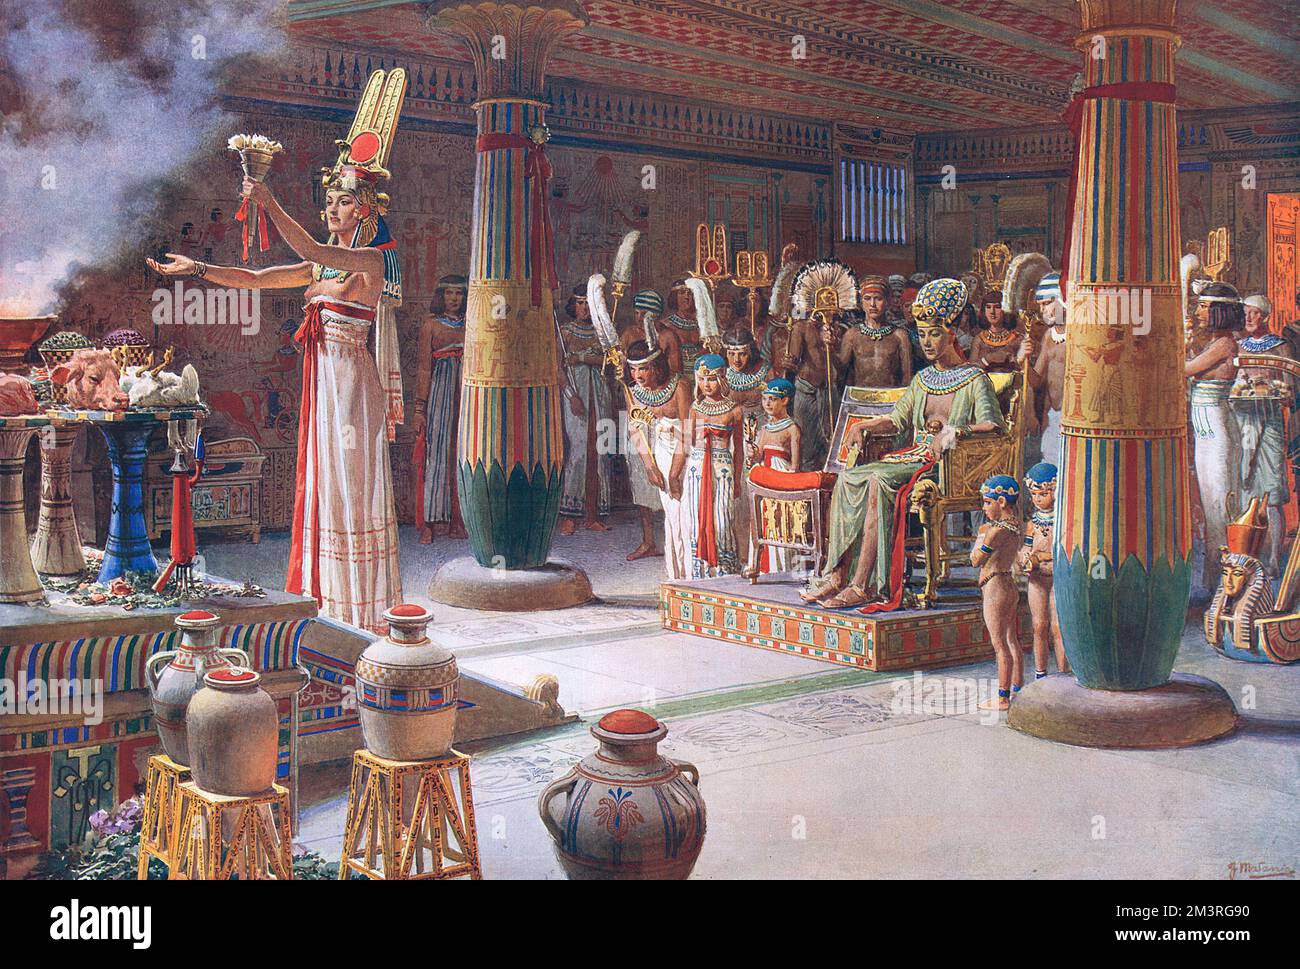 Nefertiti, regina di Akhna-ton, ha mostrato di officiare come sacerdotessa nel suo tempio nella città di Horizon. I principini e le principesse si trovano accanto al re, che, indossando il capo militare del faraone, si vede seduto davanti all'altare. Ai gradini dell'altare stesso Nefertiti si rivolge al grande Aton. Primo in una serie di quattro riproduzioni storiche che immagina scene nella vita di grandi regine dalla storia dell'artista, Fortunino Matania nella sfera. Data: 1927 Foto Stock